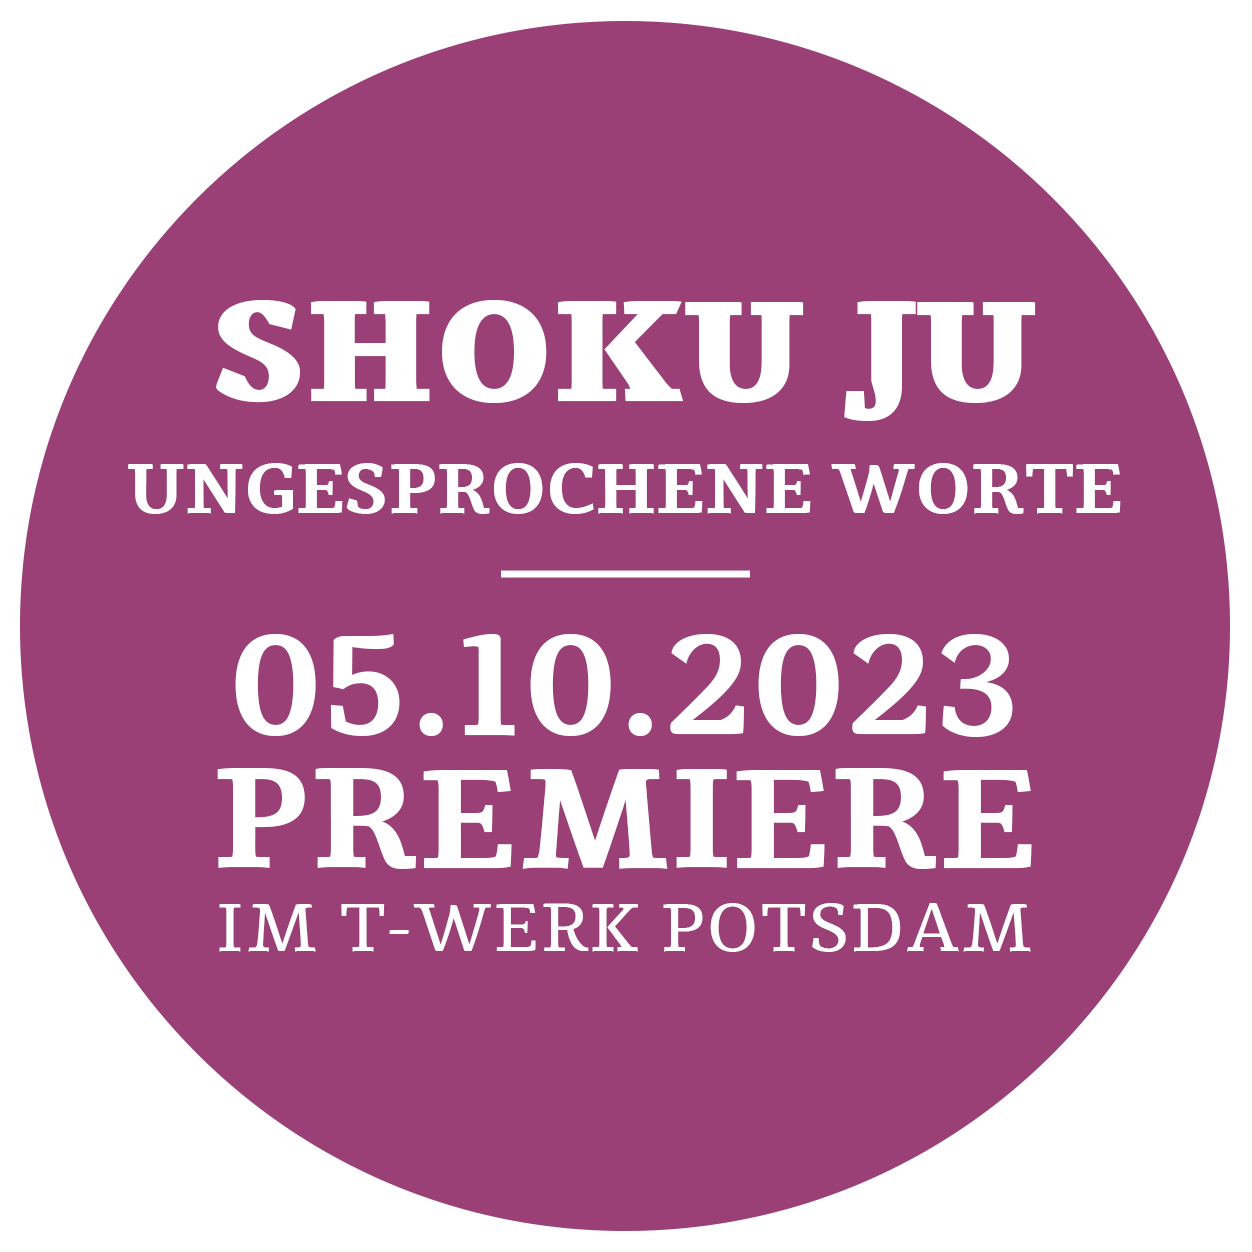 Shoku Ju! – Premiere 05.10.2023